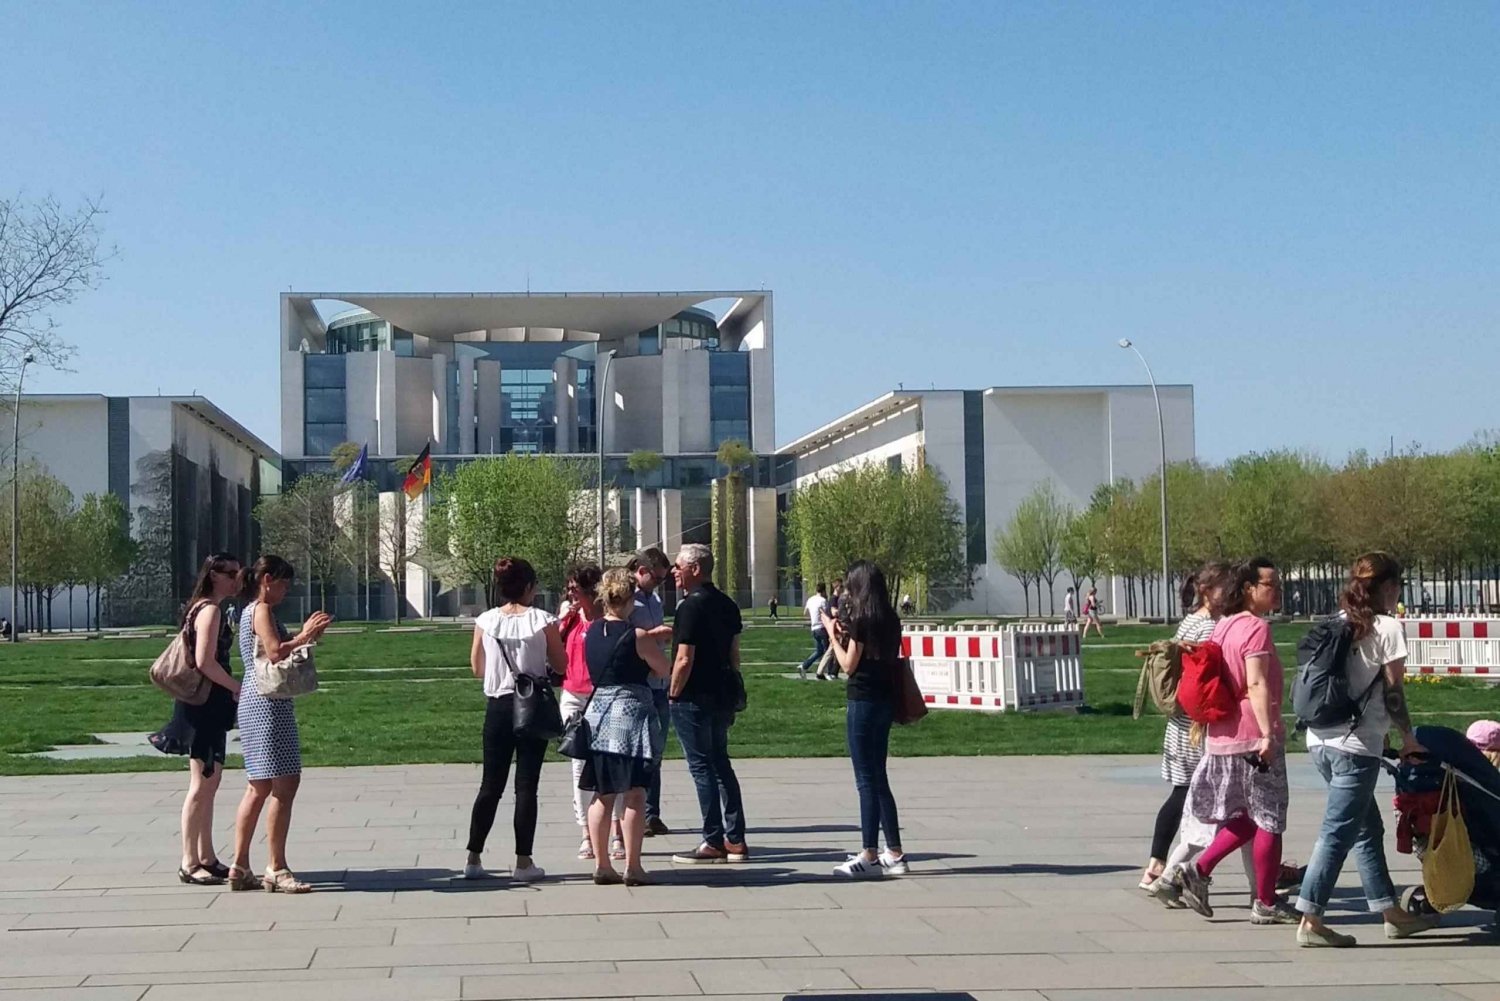 Berlino: tour guidato del quartiere governativo attorno al Reichstag